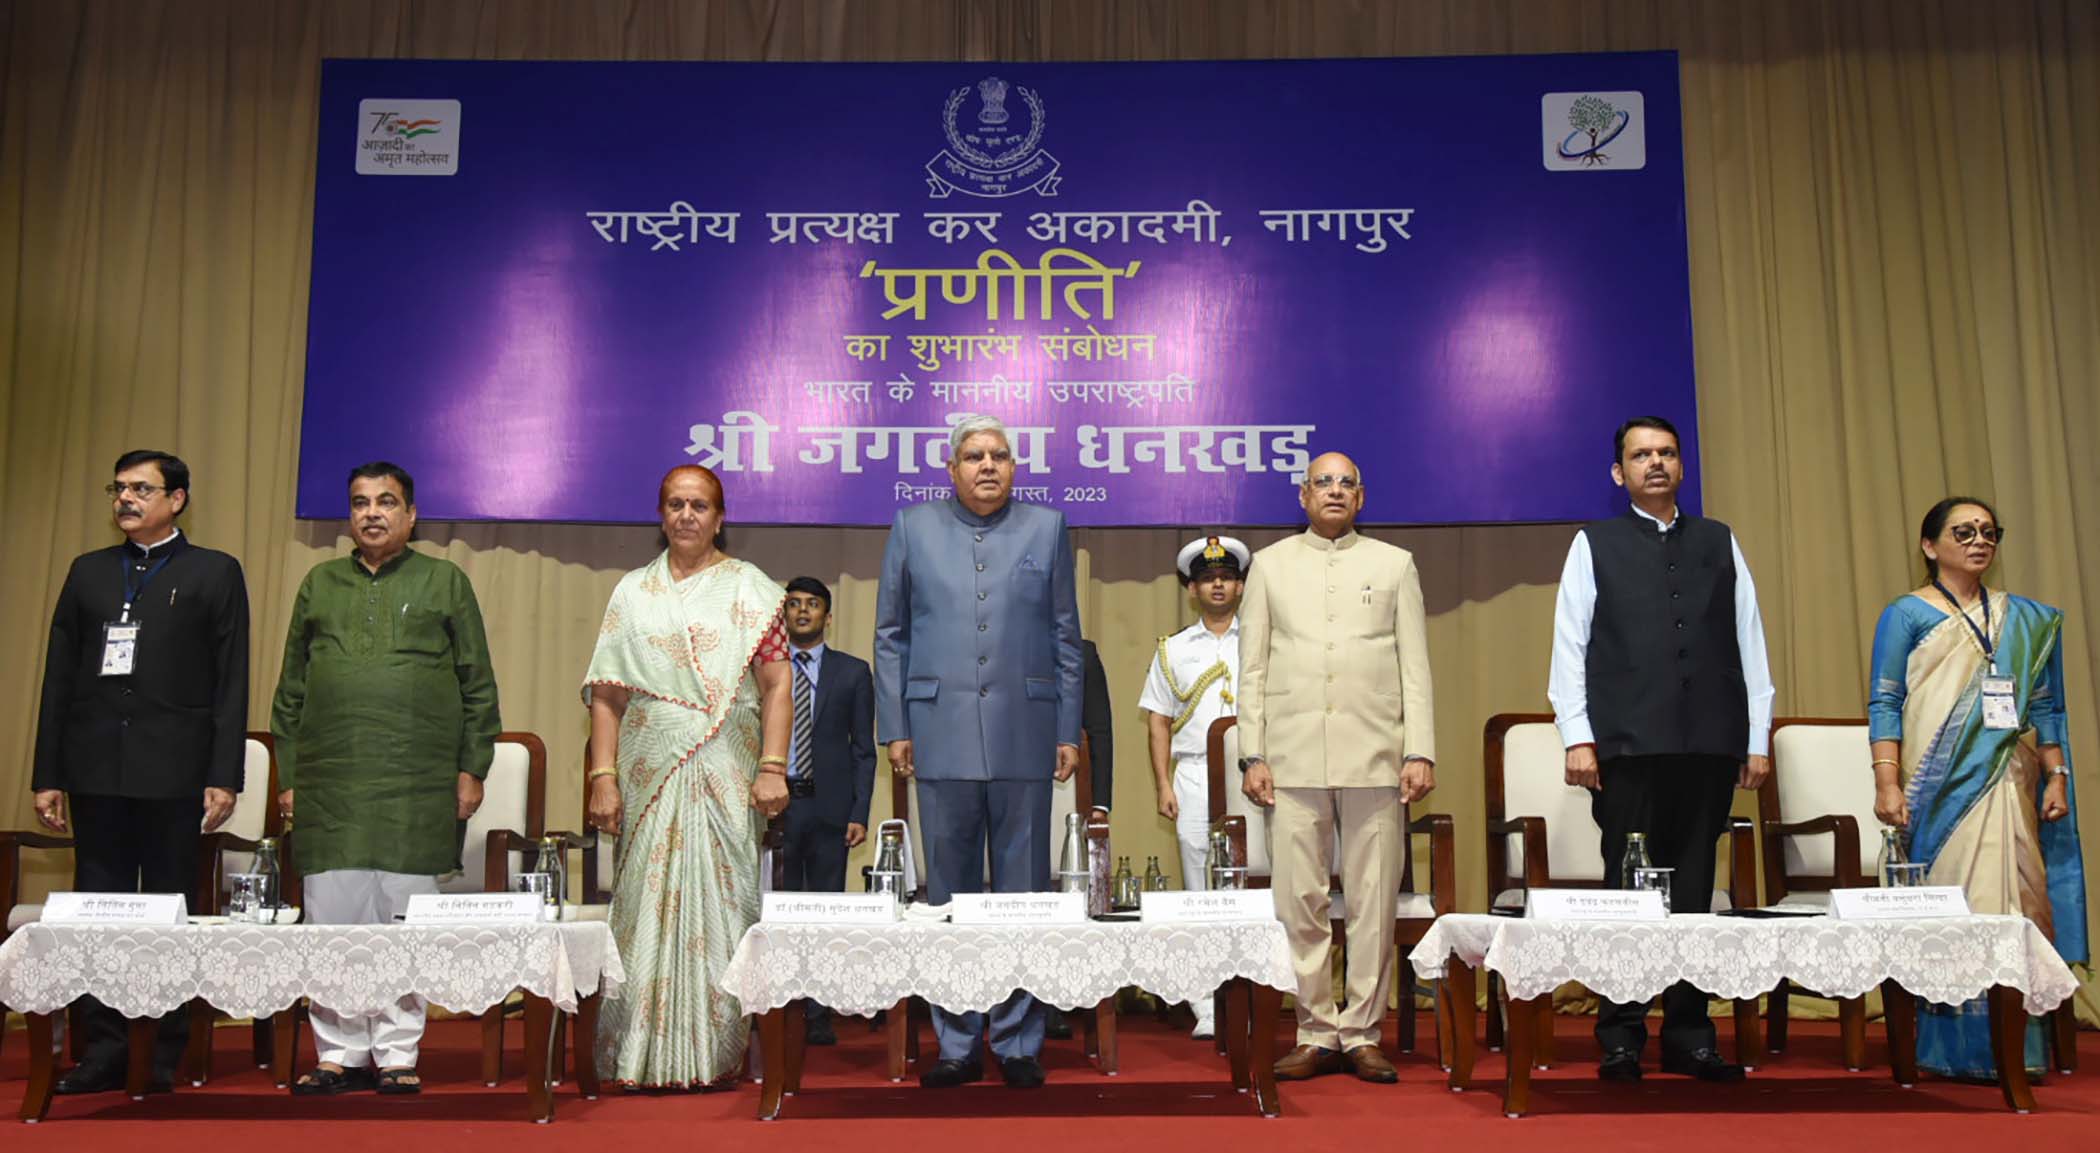 04 अगस्त 2023 को नागपुर, महाराष्ट्र में राष्ट्रीय प्रत्यक्ष कर अकादमी में 'प्रणीति' के उद्घाटन समारोह की शोभा बढ़ाते हुए उपराष्ट्रपति श्री जगदीप धनखड़ । 